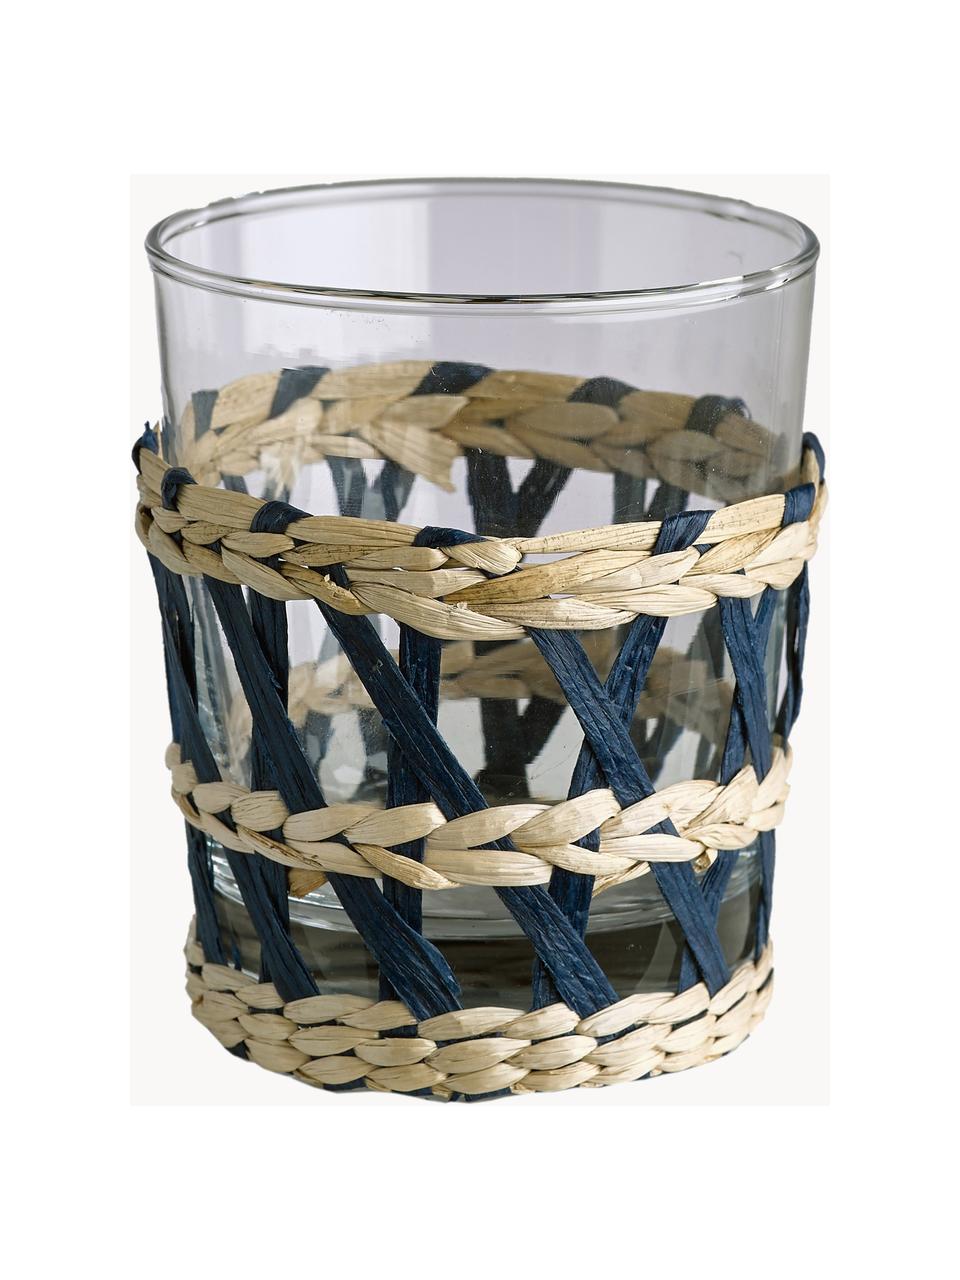 Waterglazen Reed, set van 6, Decoratie: stok, Transparant, meerkleurig, Ø 8 x H 10 cm, 250 ml